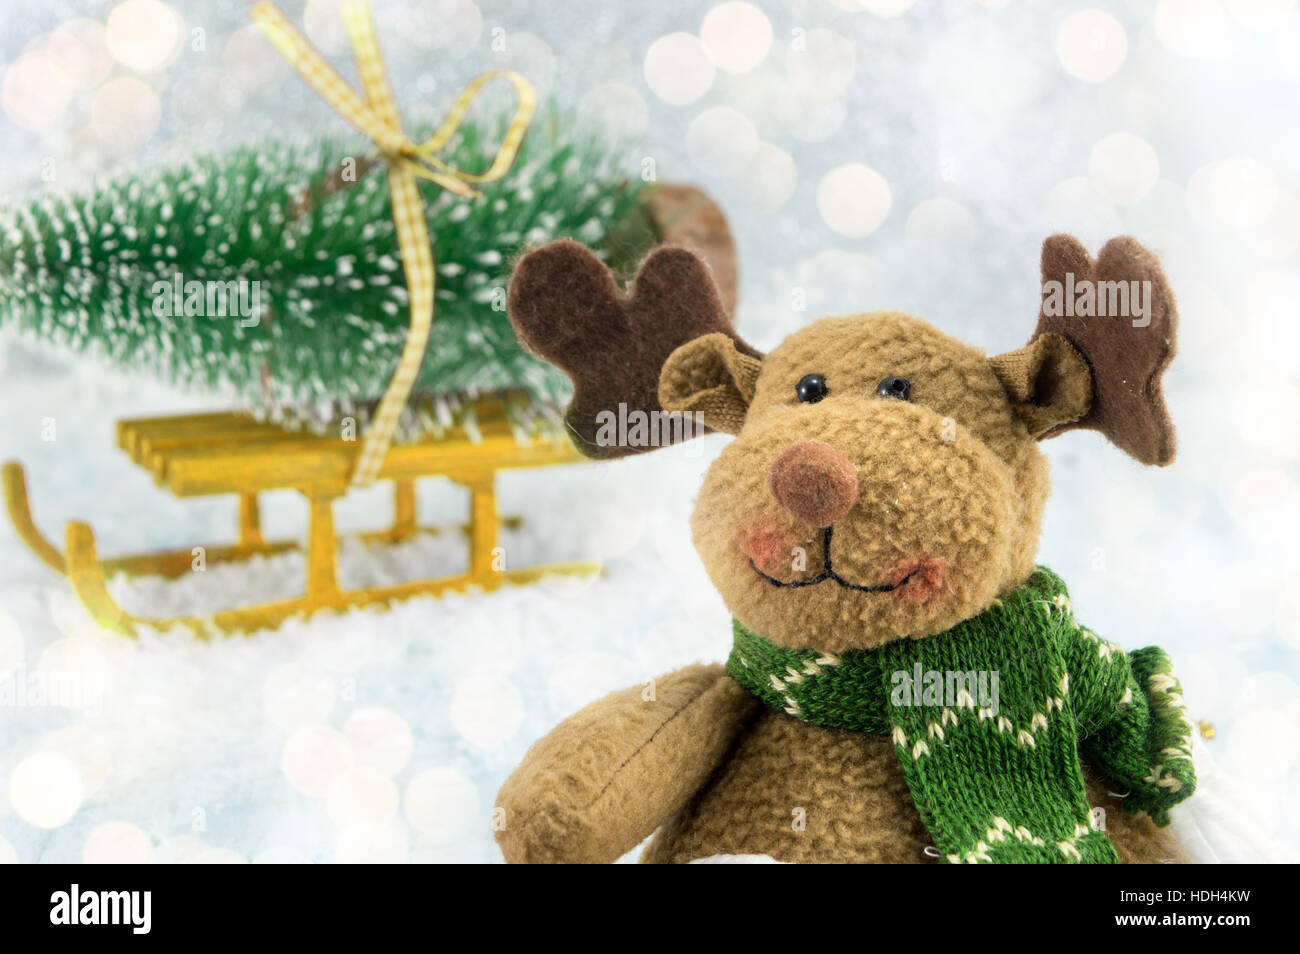 Spielzeug-Rentier und einen Weihnachtsbaum auf dem Schlitten mit Schnee bedeckt Stockfoto